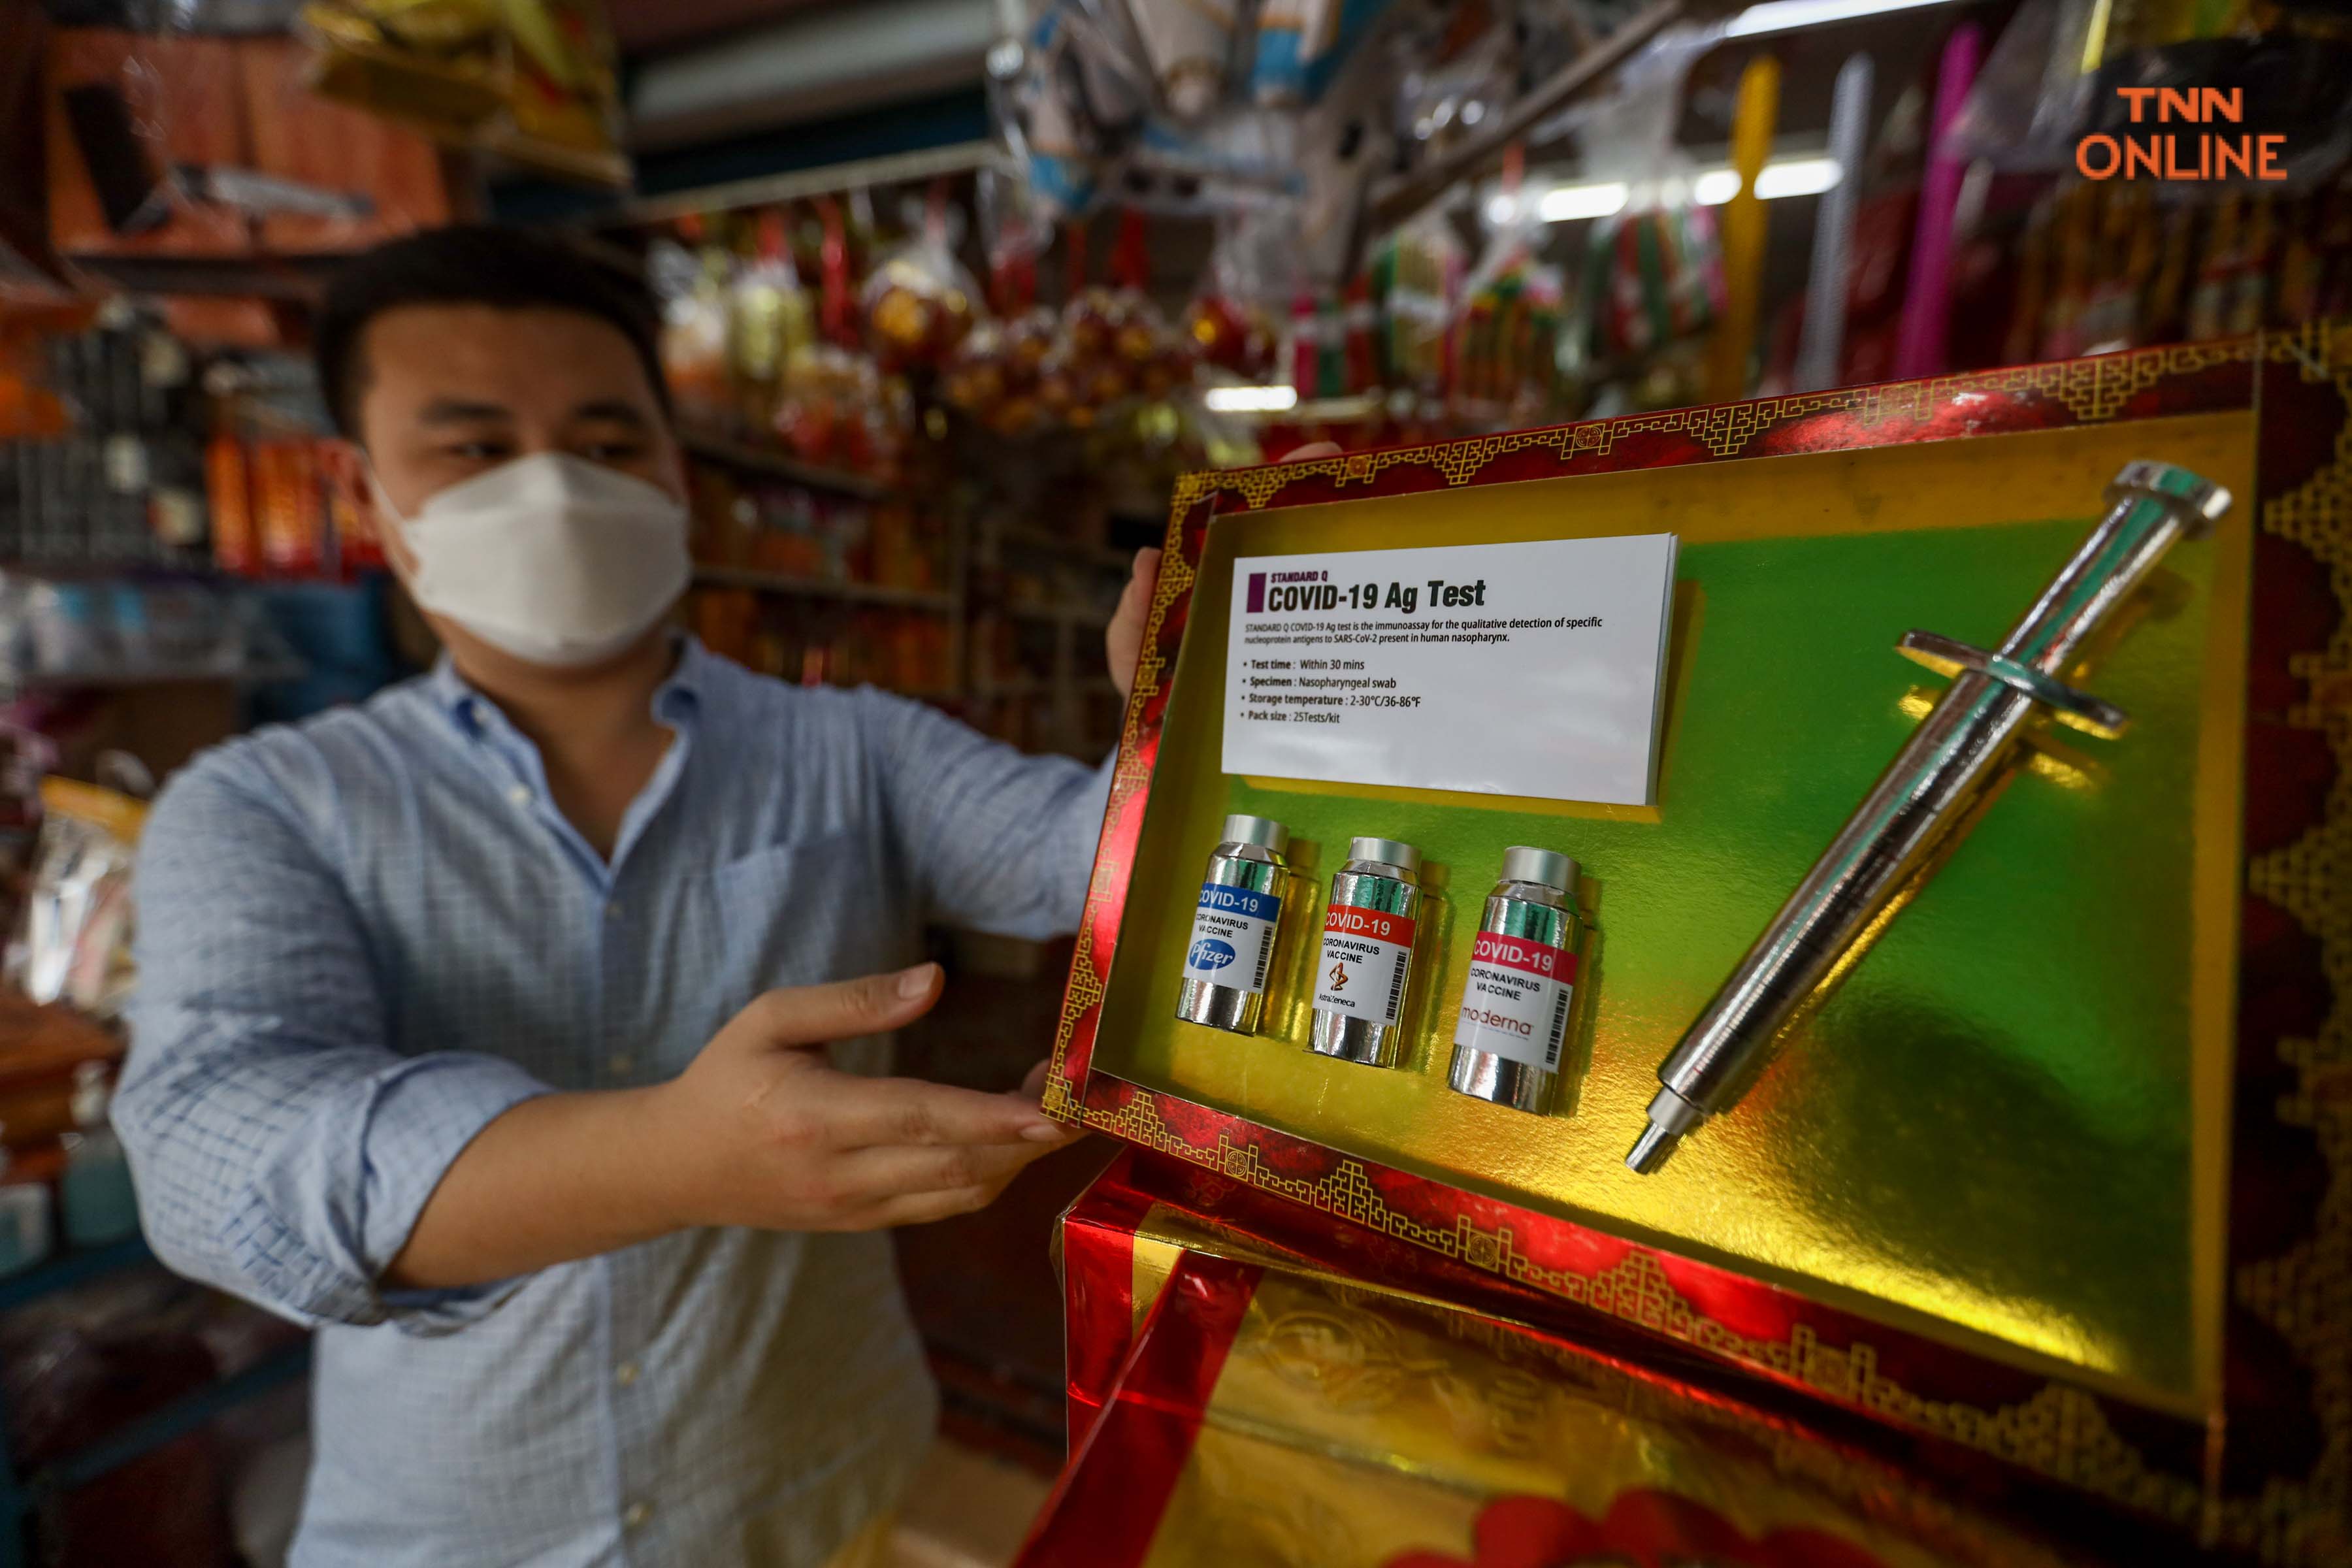 “กงเต็กวัคซีน” ไอเดียร้านค้ากระตุ้นยอดขายรับสารทจีน